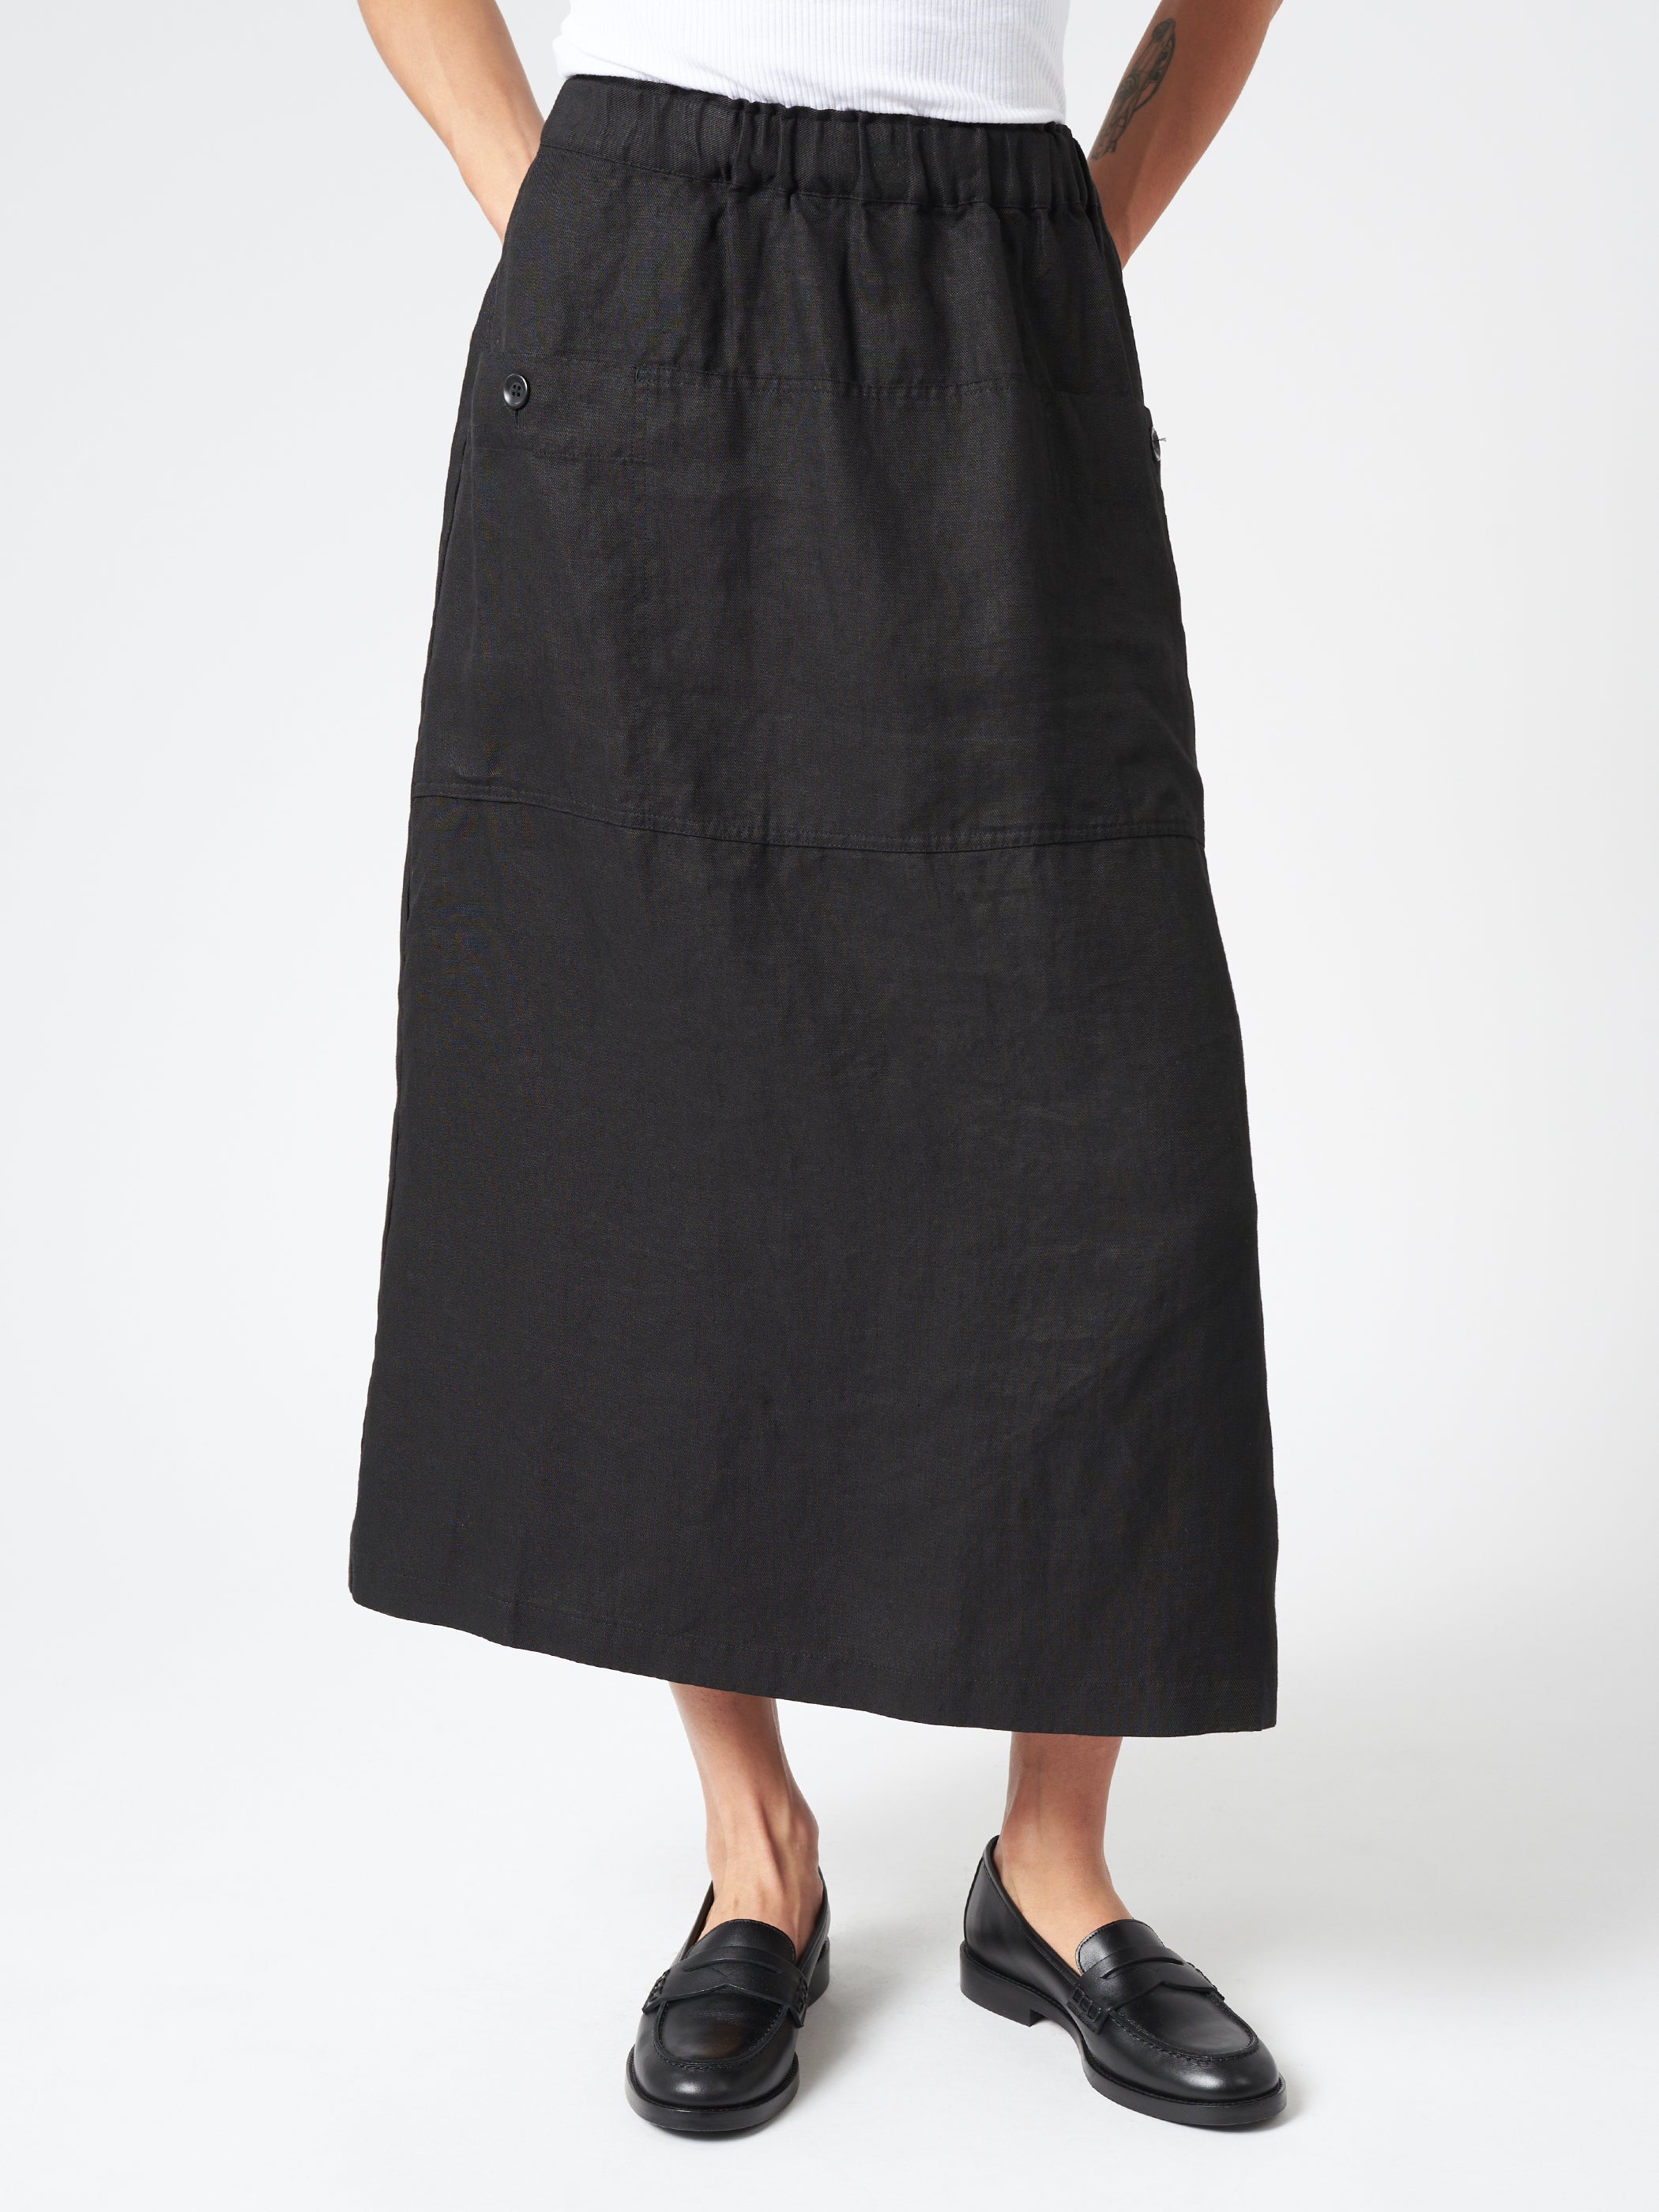 Gardener Skirt